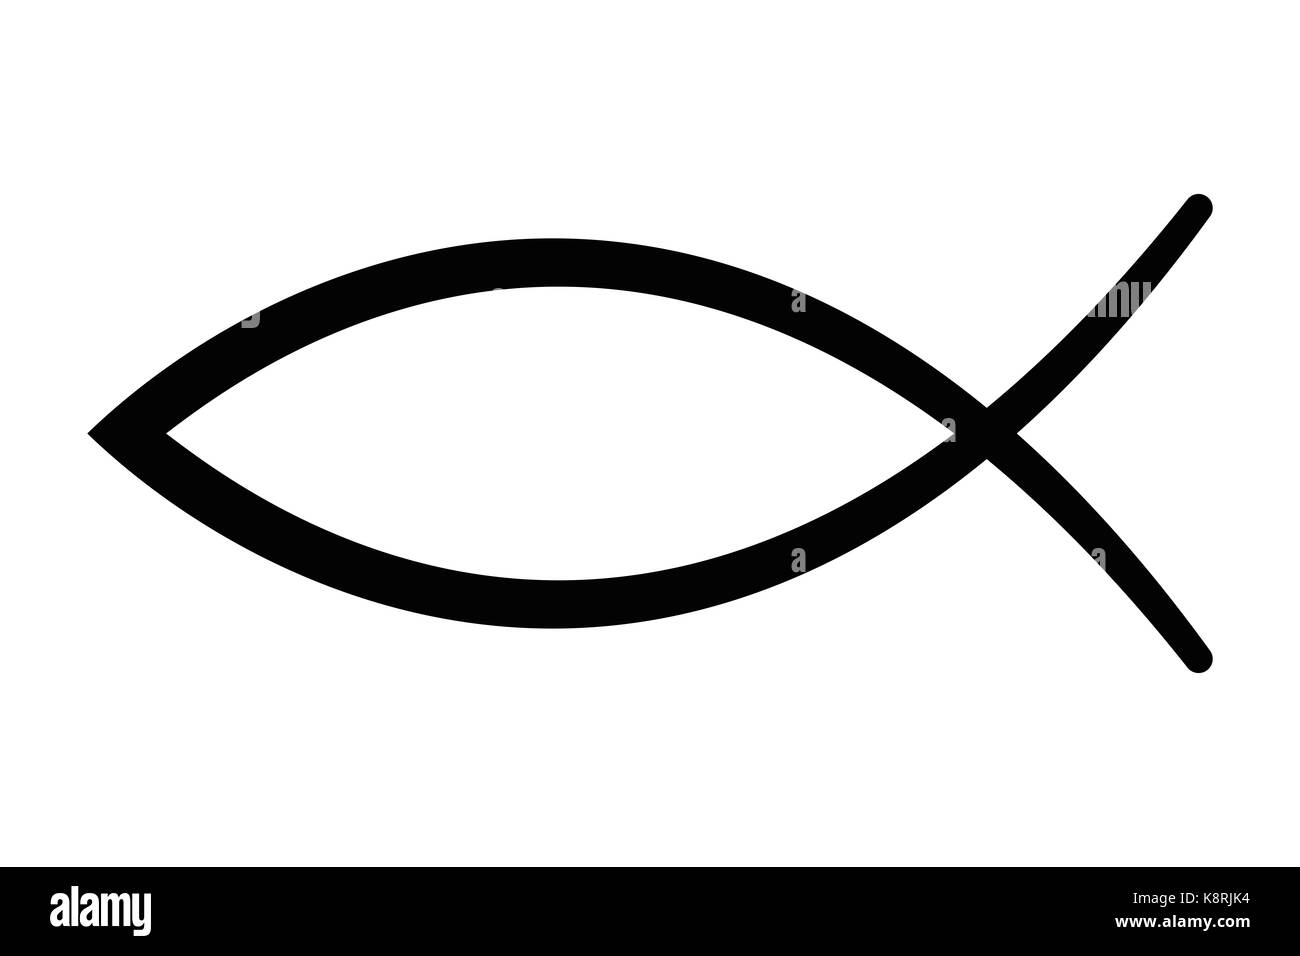 Zeichen der Fische, ein Symbol für christliche Kunst, auch als Jesus Fisch bekannt. Symbol, bestehend aus zwei sich schneidende Bögen. Auch als Ichthys oder ichthus. Stockfoto